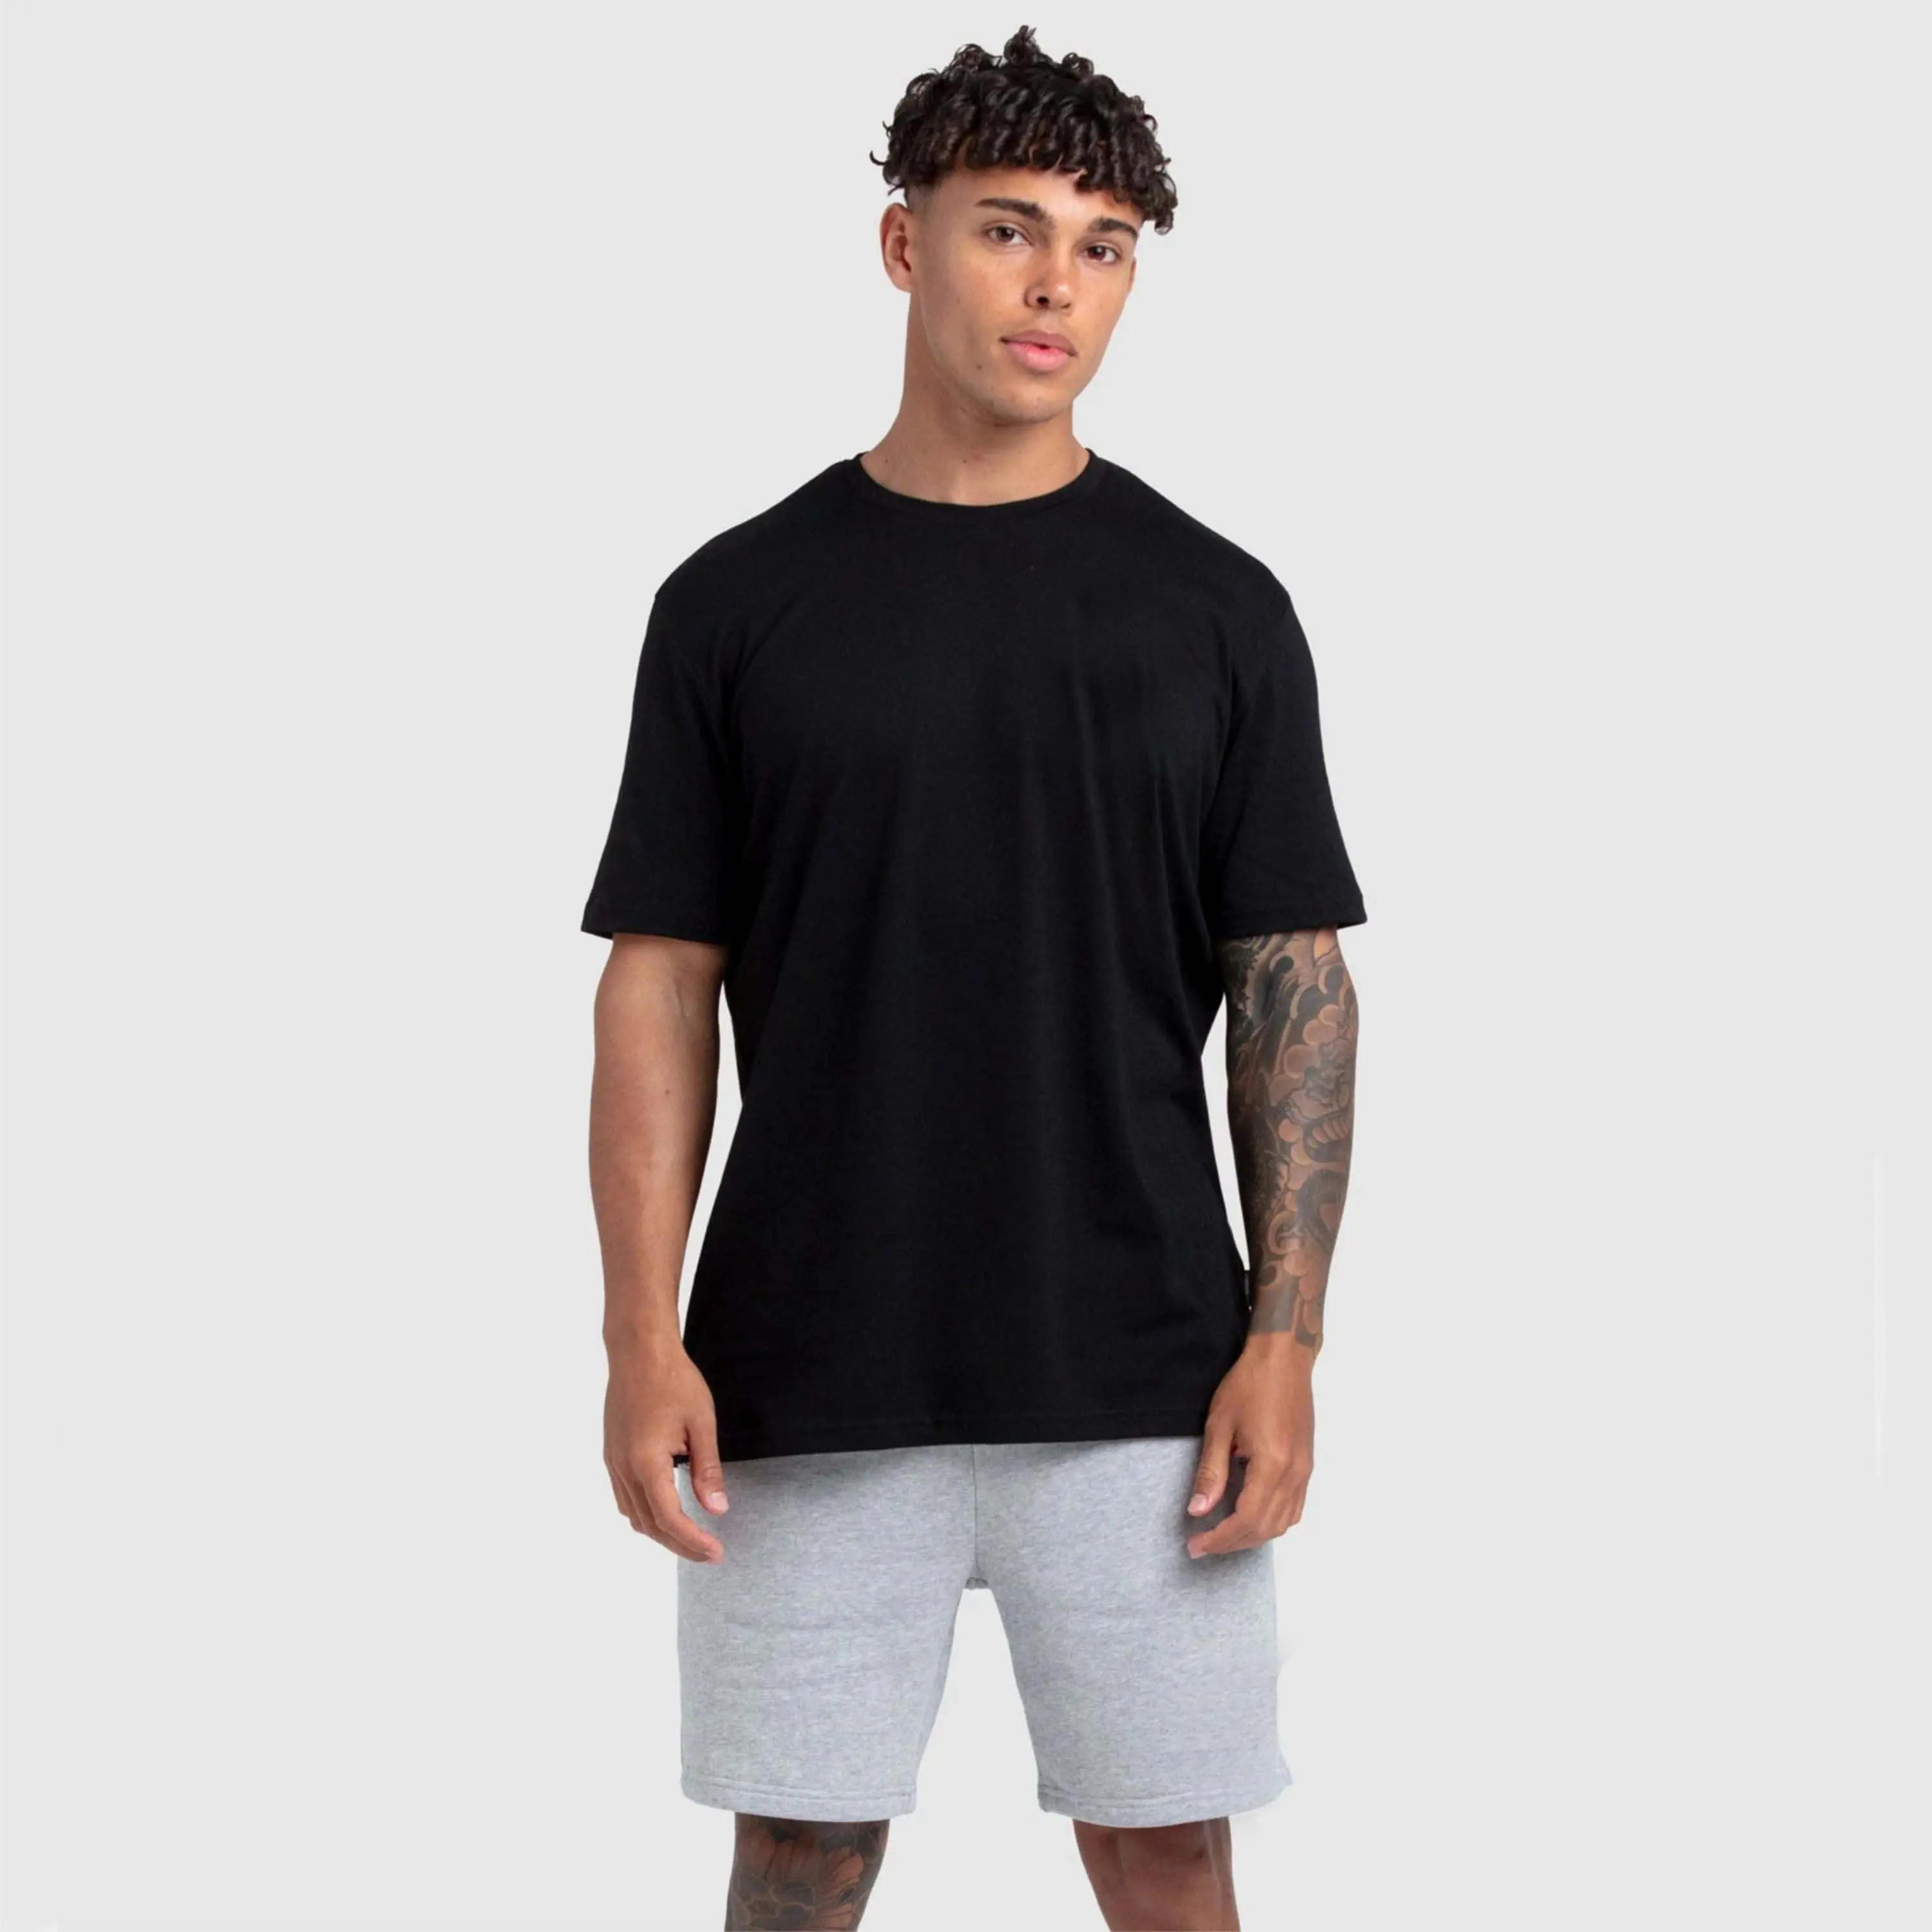 प्रीमियम गुणवत्ता वाले पुरुष 100% कॉटन काले रंग की बेसिक रेगुलर फिट टी शर्ट बिक्री के लिए पुरुषों के लिए अनुकूलित टी शर्ट्स पुरुषों की बेसिक टीज़